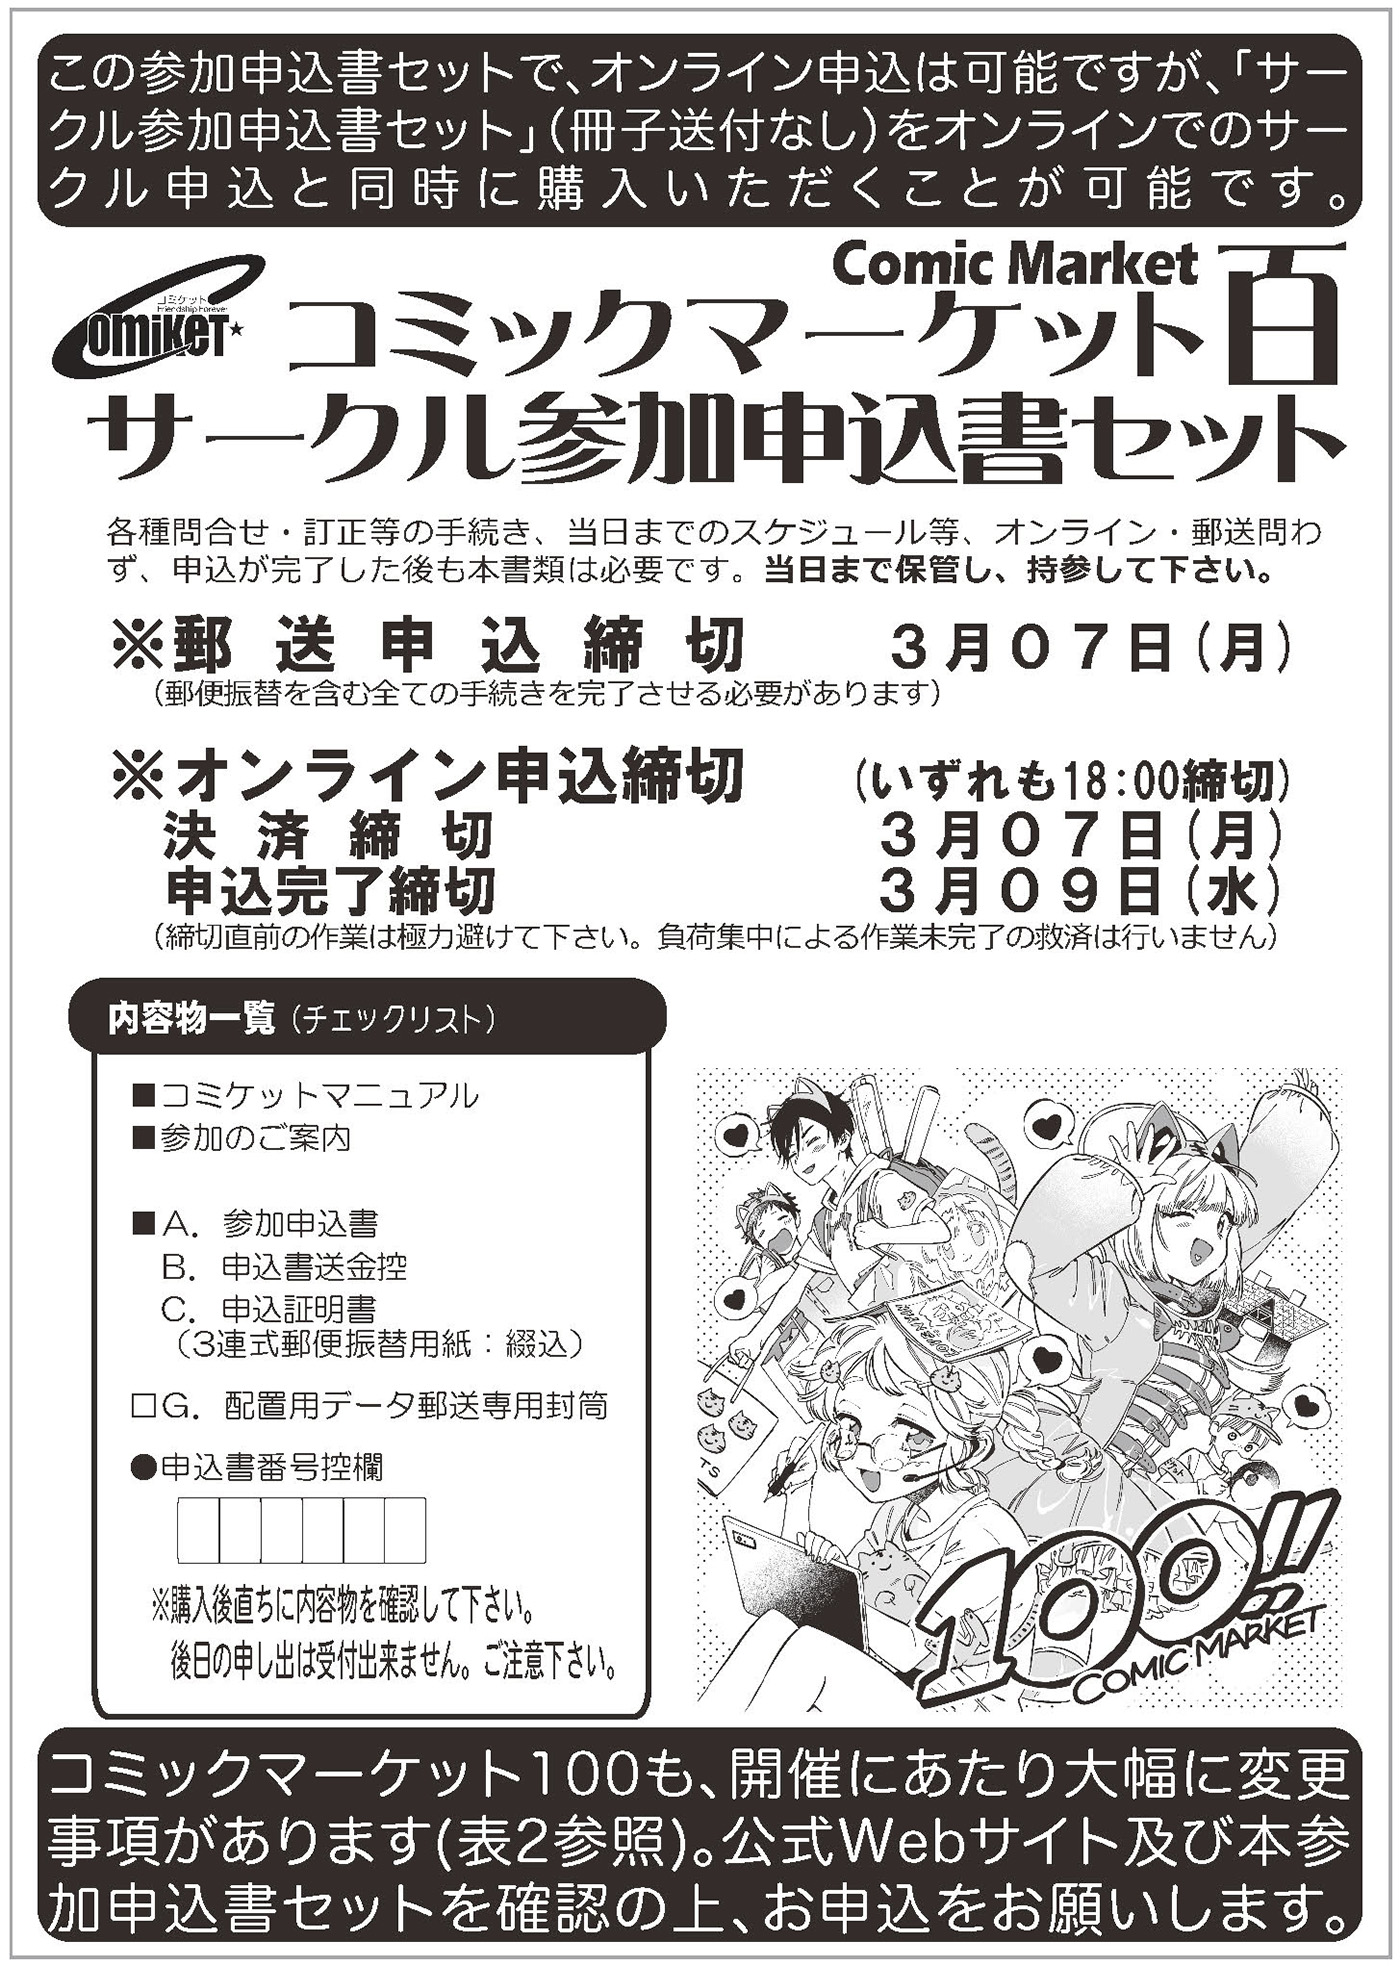 C100 コミックマーケット100 サークルチケット 8月13日&14日 セット